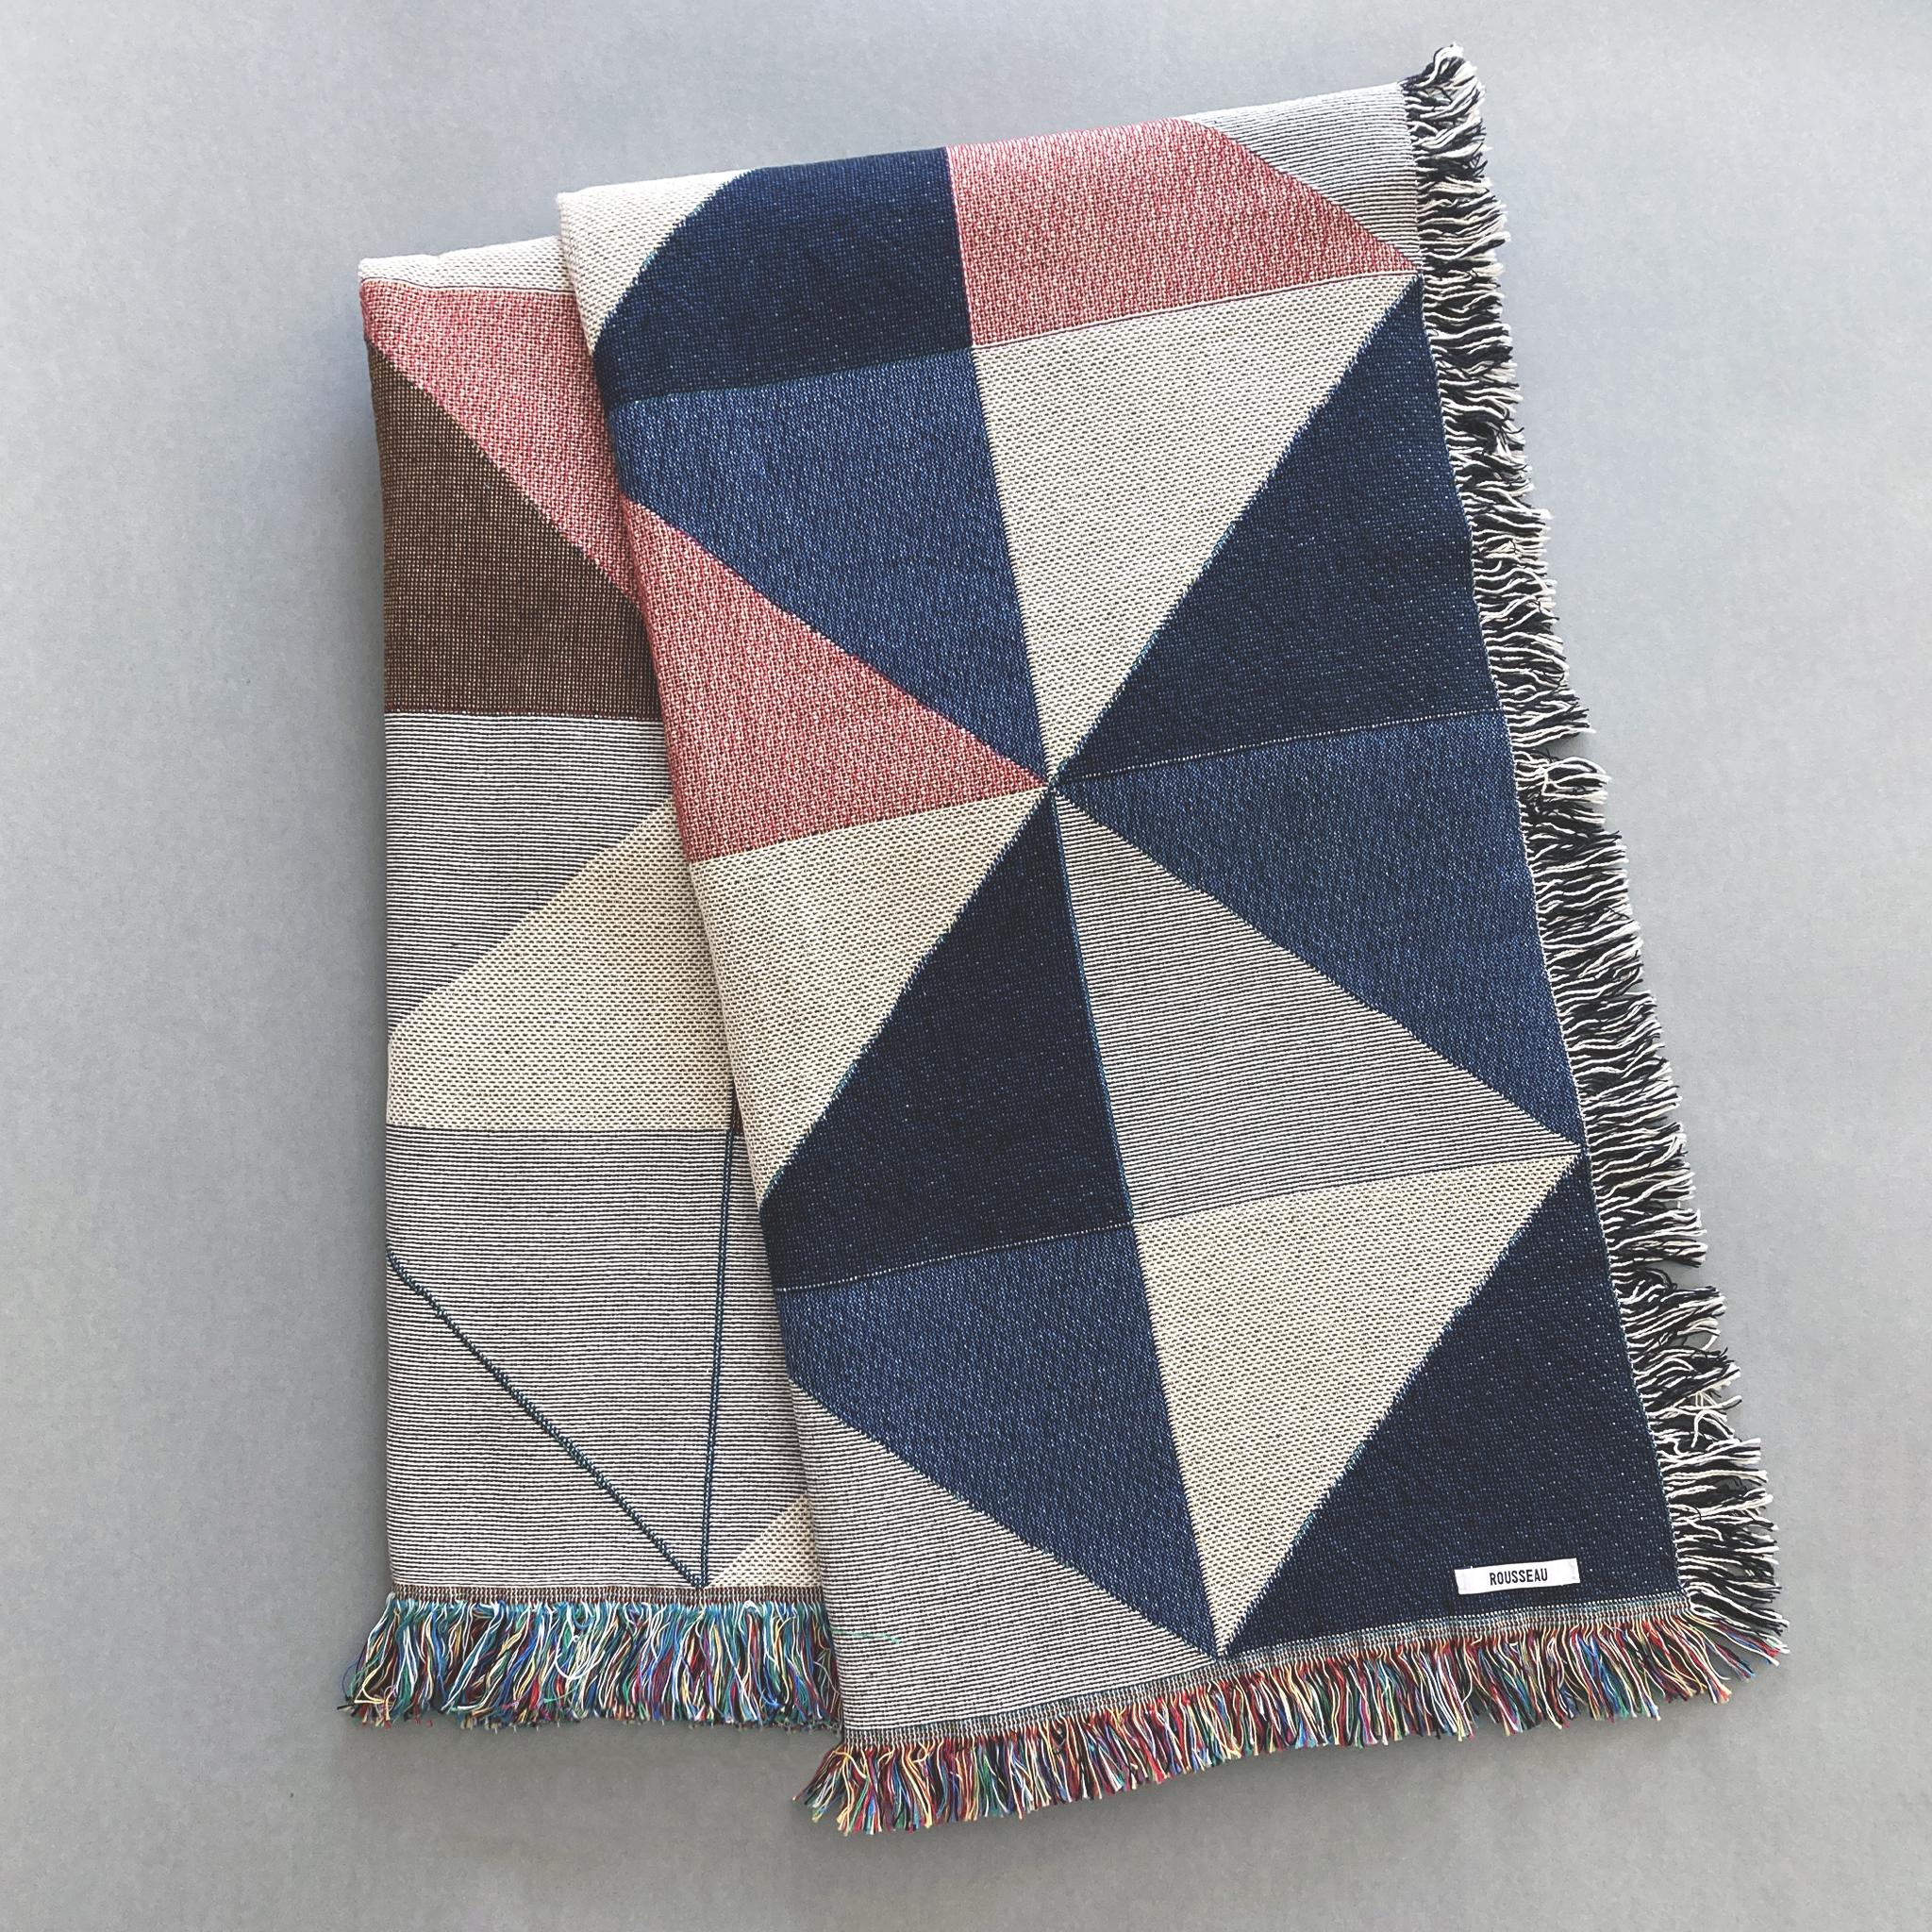 The Sixteen ist eine gewebte Decke mit geometrischem Druck in Marine, Rosa, Ocker und Grau und Fransen. Mit recycelter Baumwolle auf einem Jacquard-Webstuhl gewebt, hergestellt in den USA. Jede Decke ist 54 x 72 Zoll groß.

Diese geometrisch